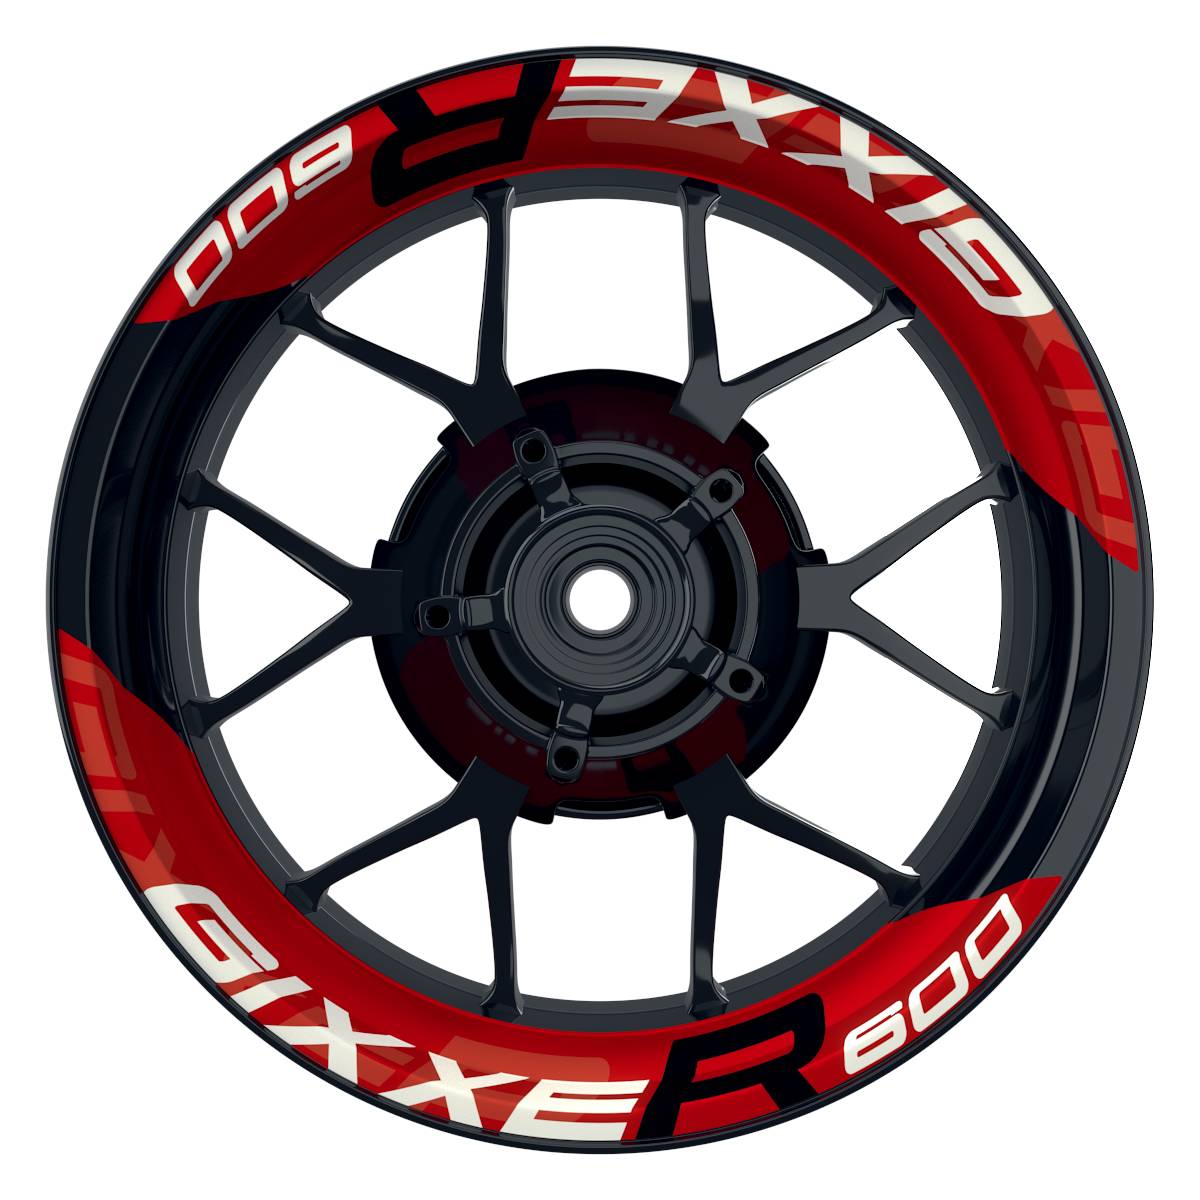 Wheelsticker Felgenaufkleber GIXXER600 einfarbig V2 rot Frontansicht